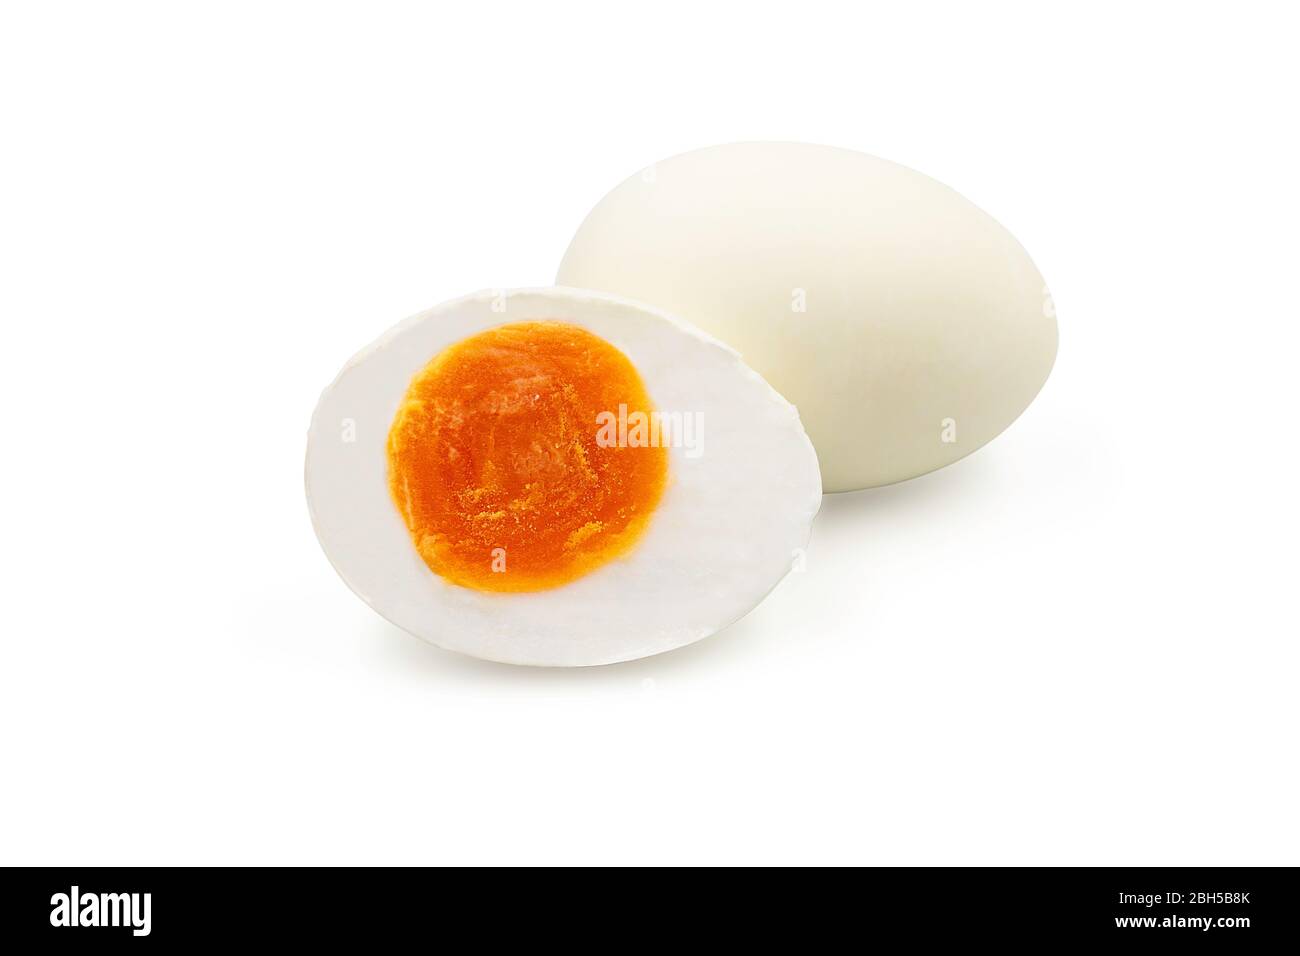 Huevo cocido orgánico salado y medio sobre fondo blanco aislado con ruta de recorte. El huevo de pato salado es la comida tailandesa popular, deliciosa con salados y c Foto de stock